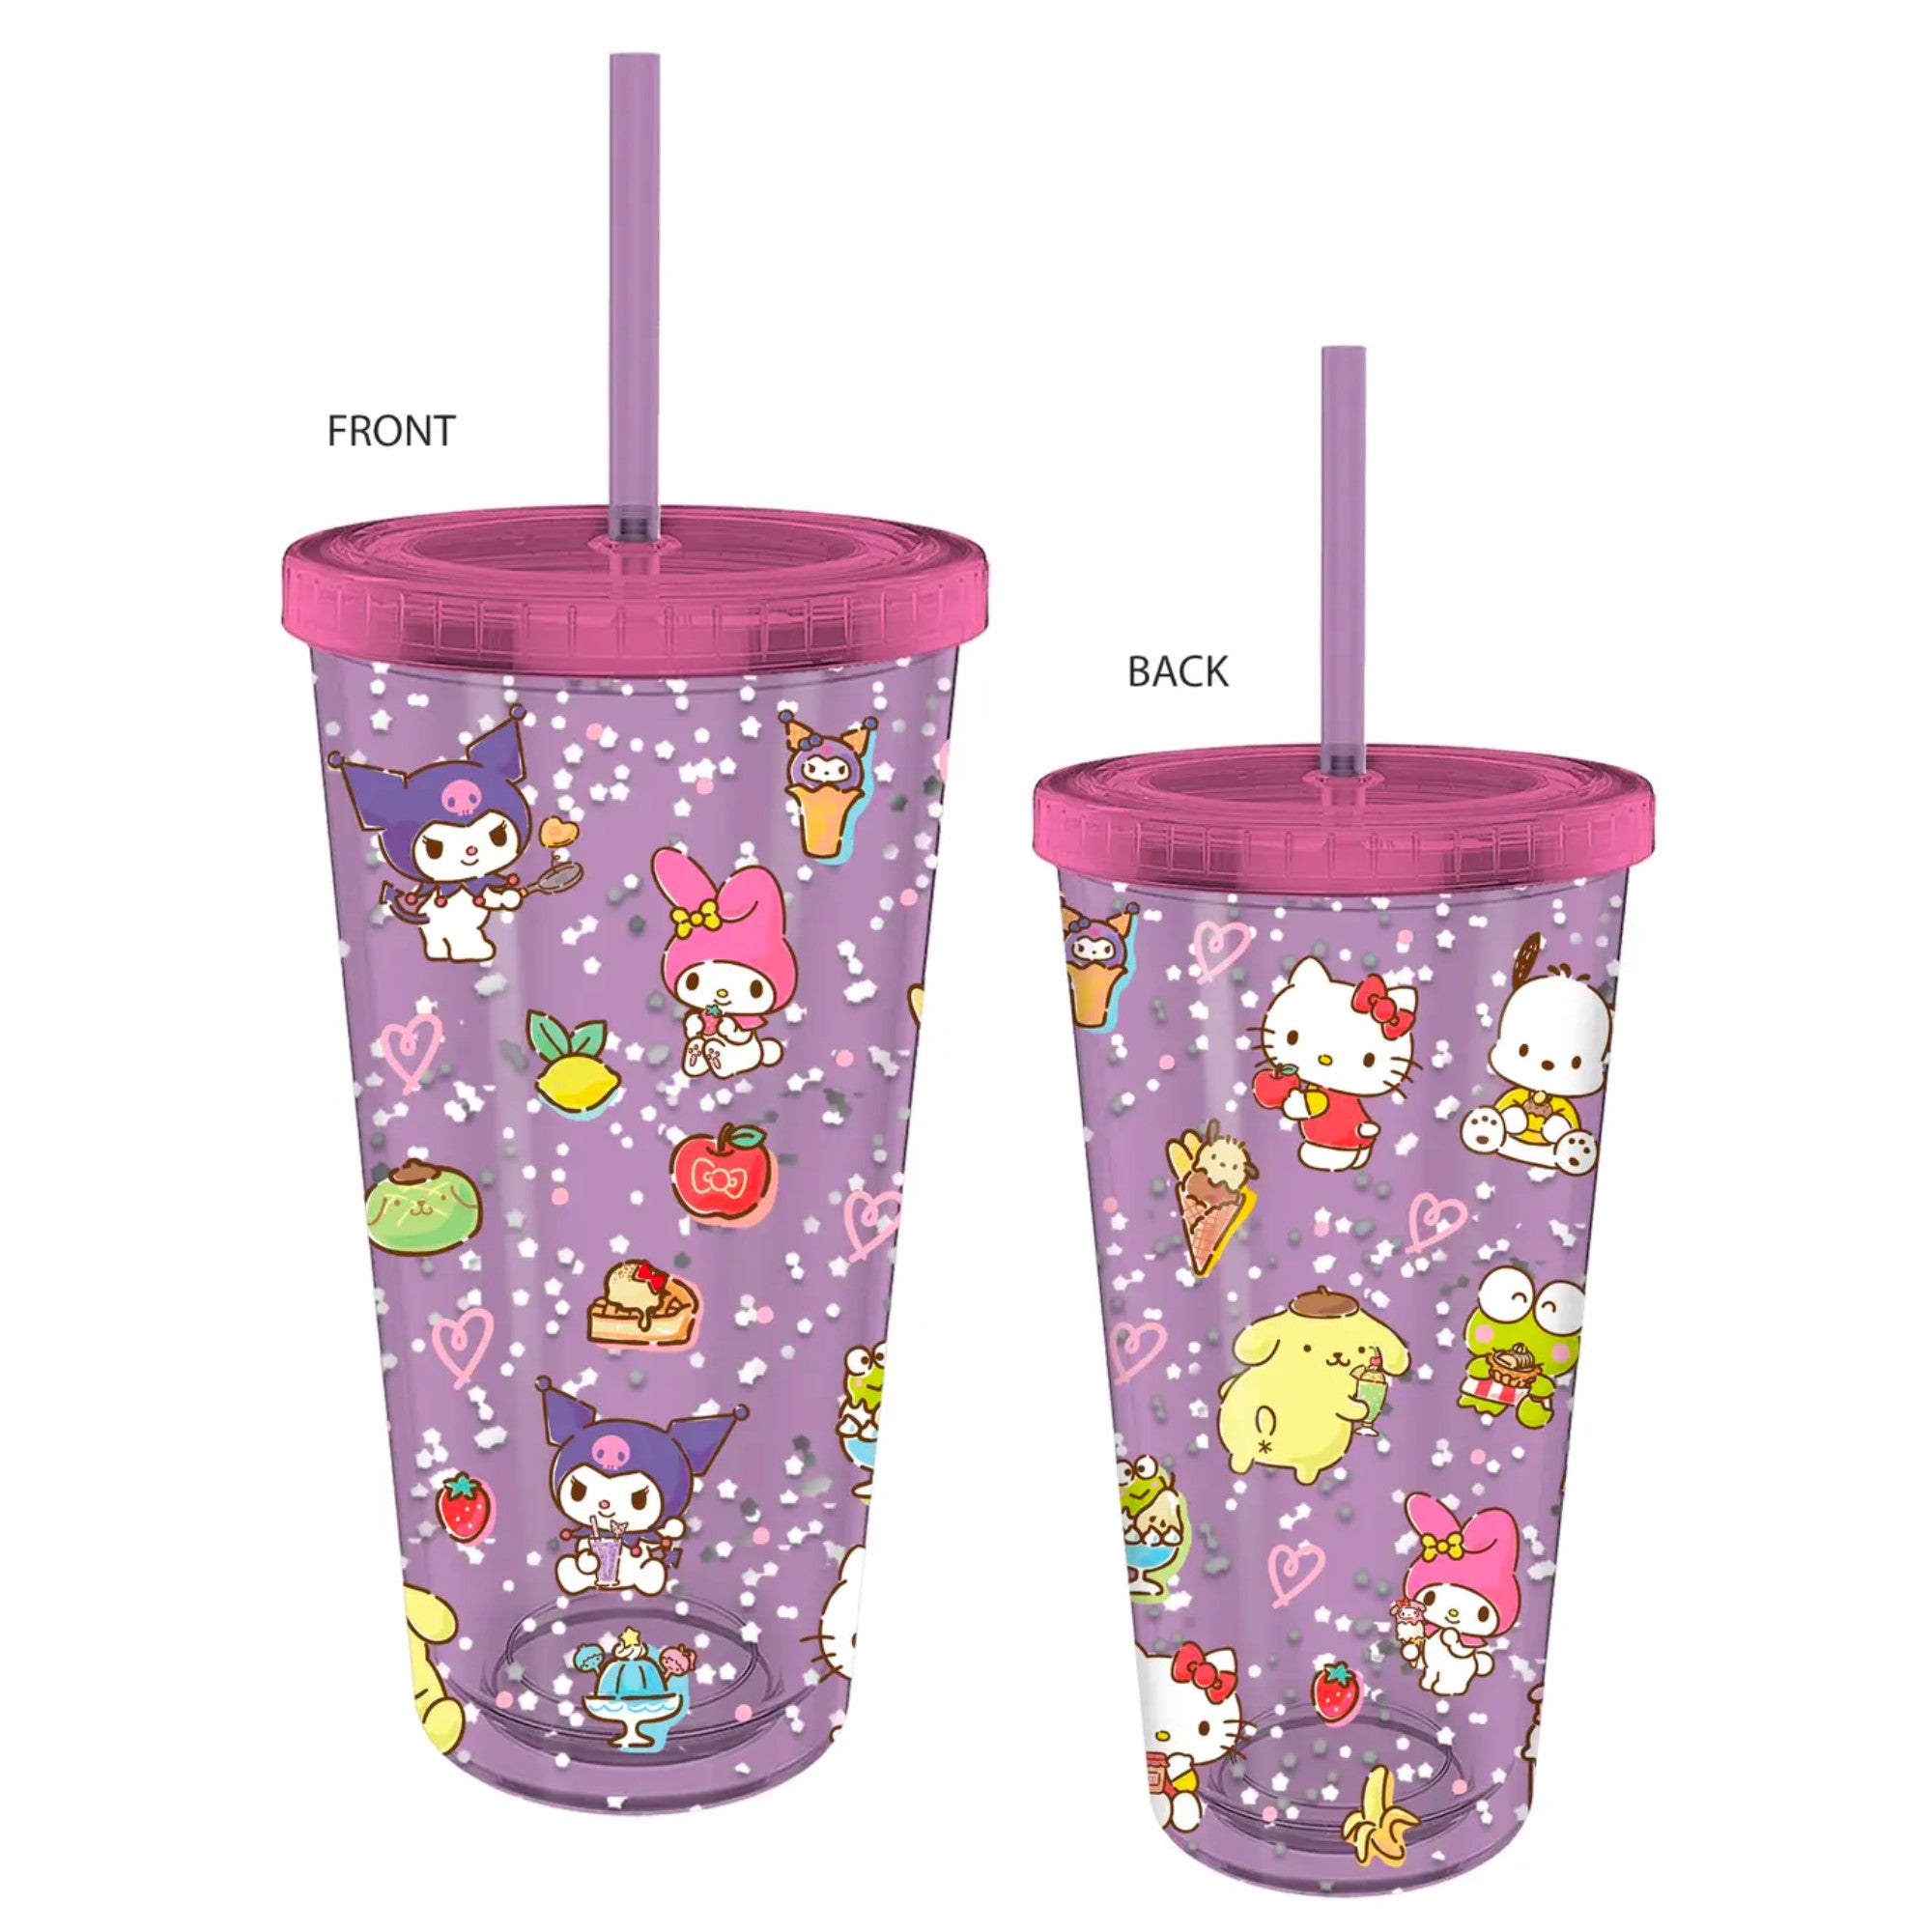 Sanrio Hello Kitty & Friends 32oz Confetti Cold Cup